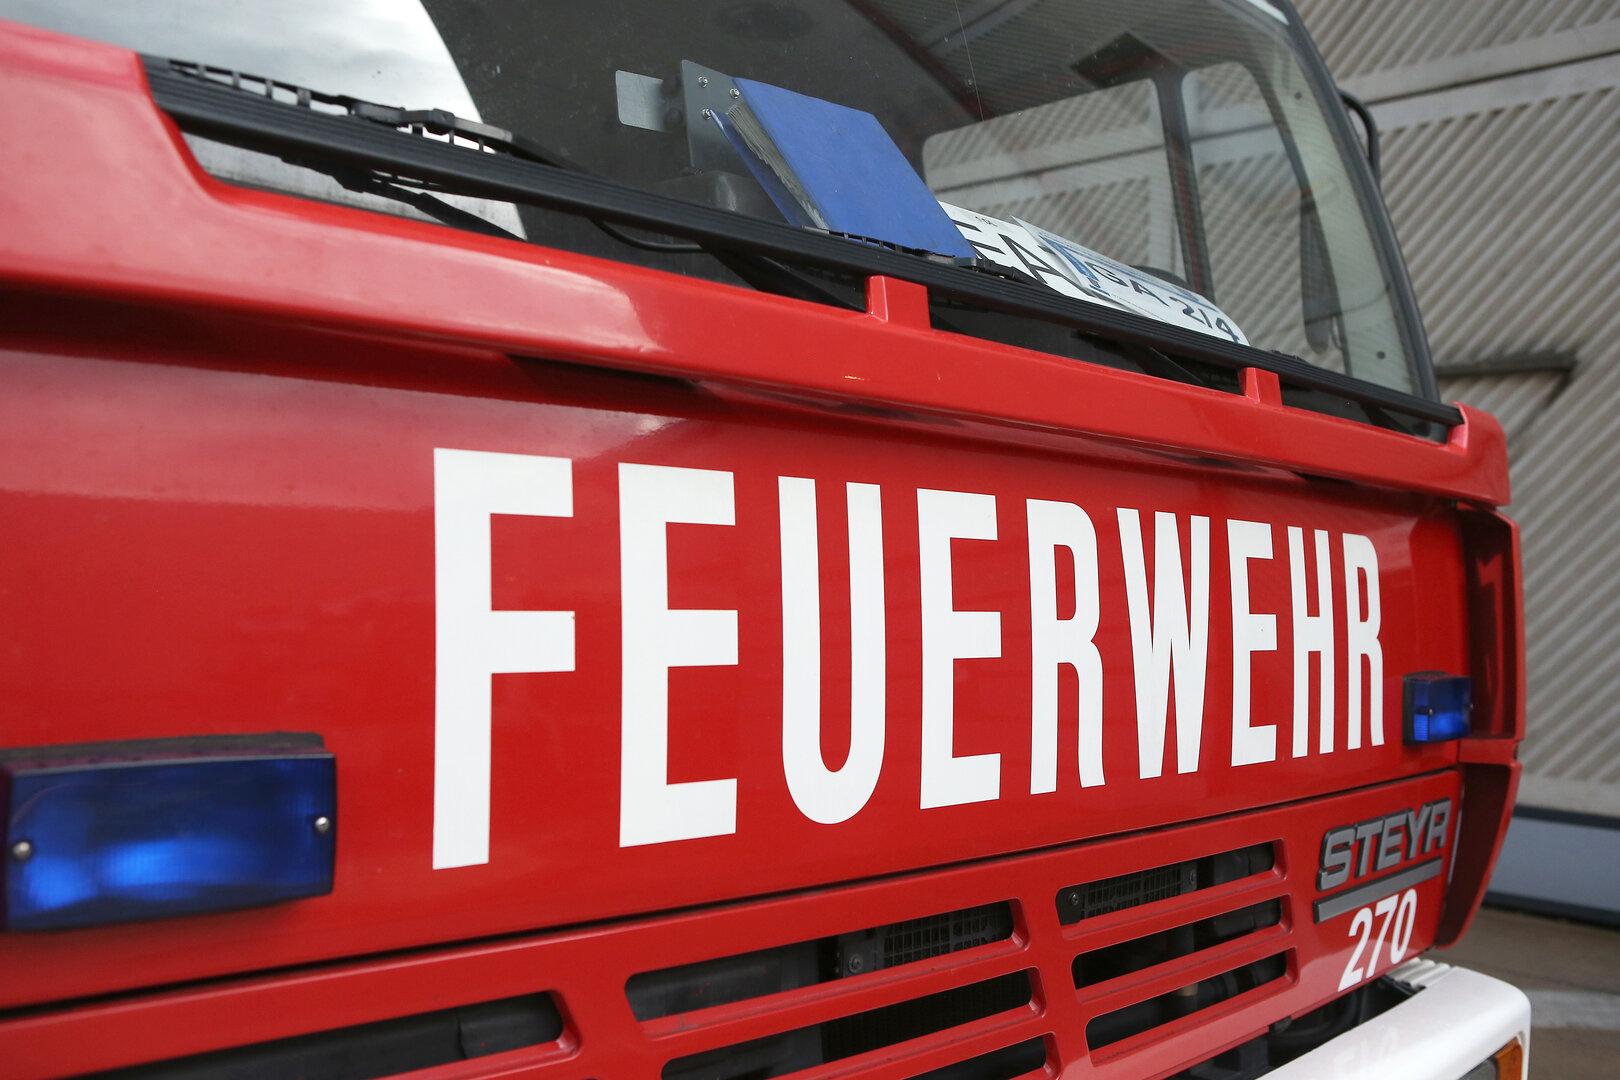 Mann mit Gas-Luft-Gemisch in Wien schwer verletzt